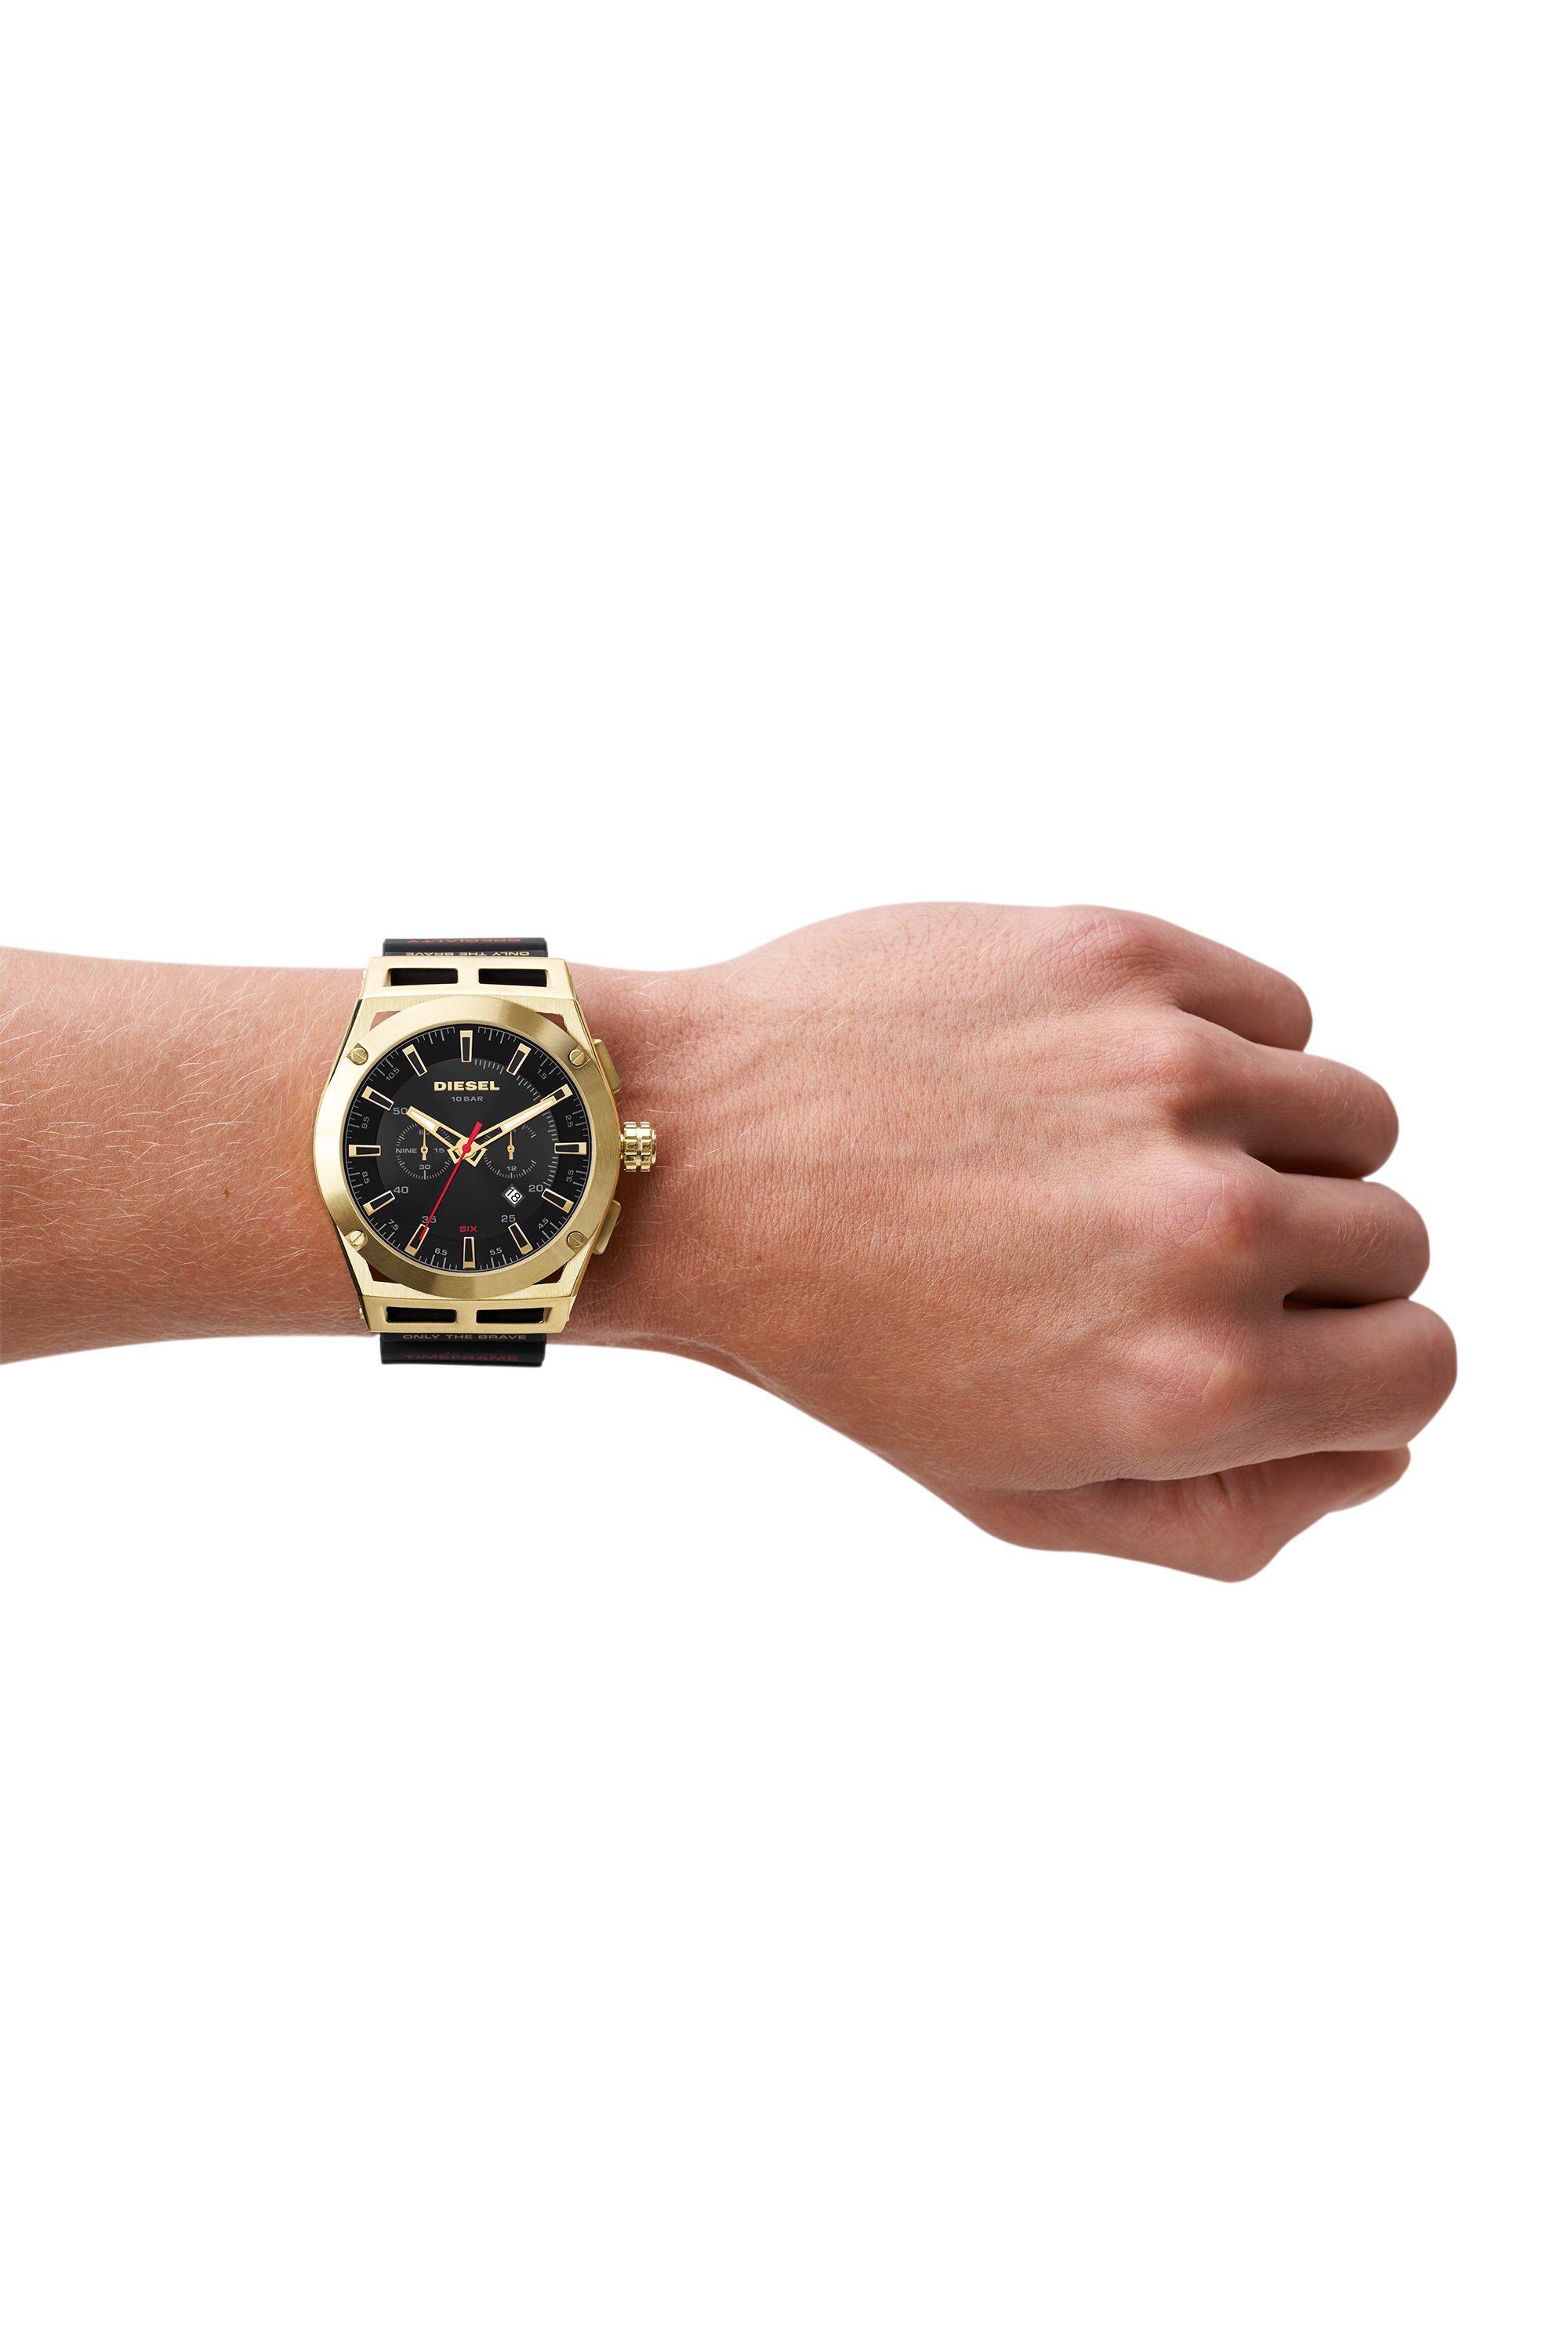 Armbanduhr braun damen - Der Vergleichssieger unserer Produkttester